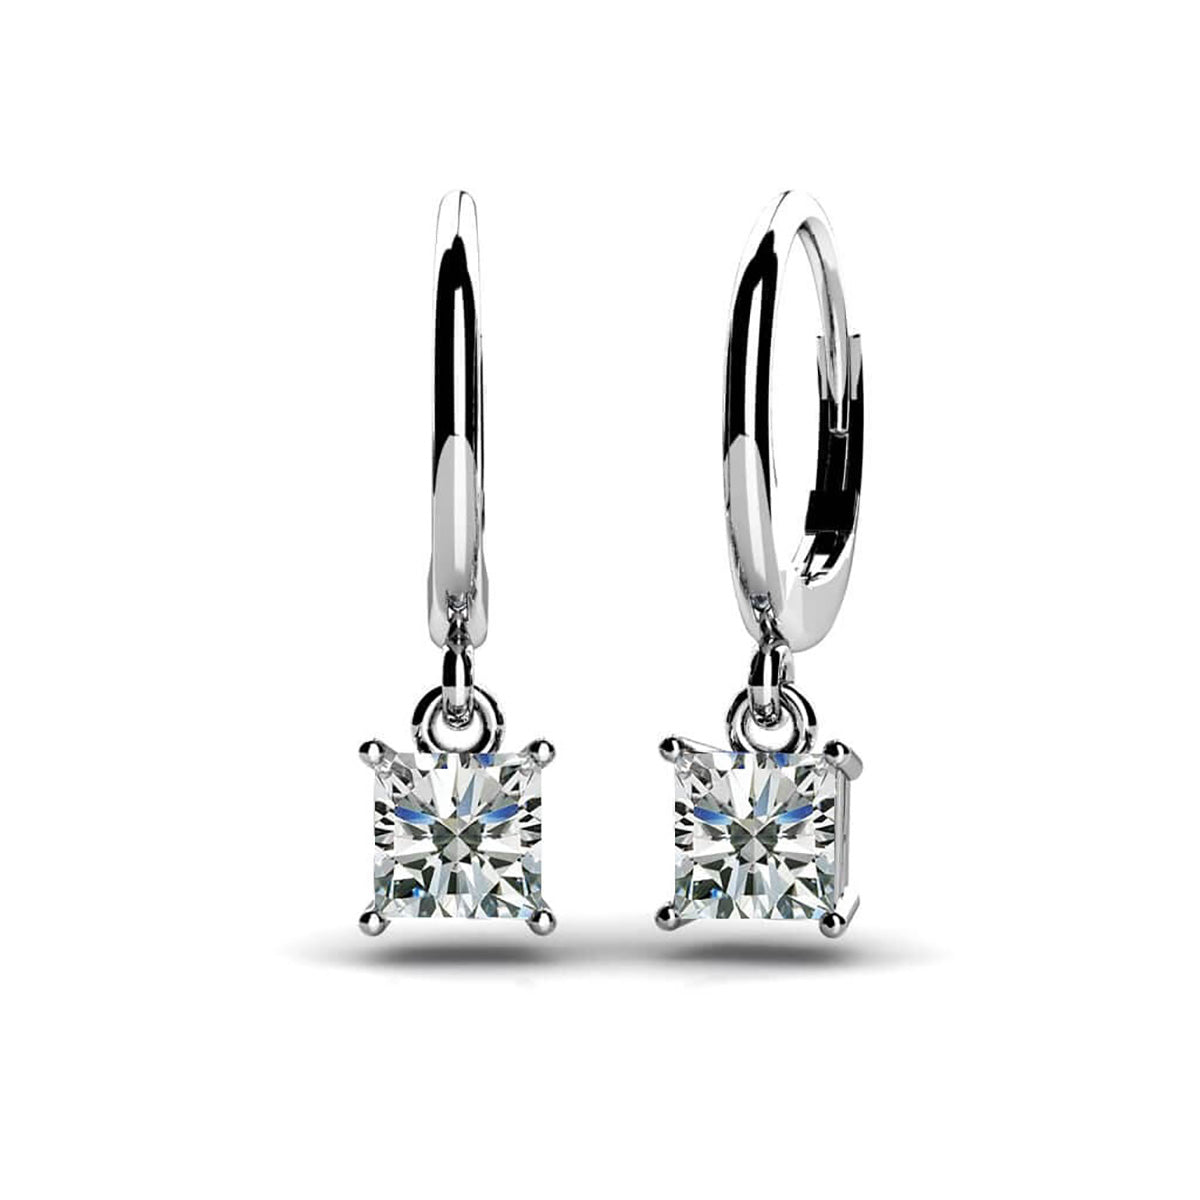 Four Prong Princess Cut Diamond Drop Earrings